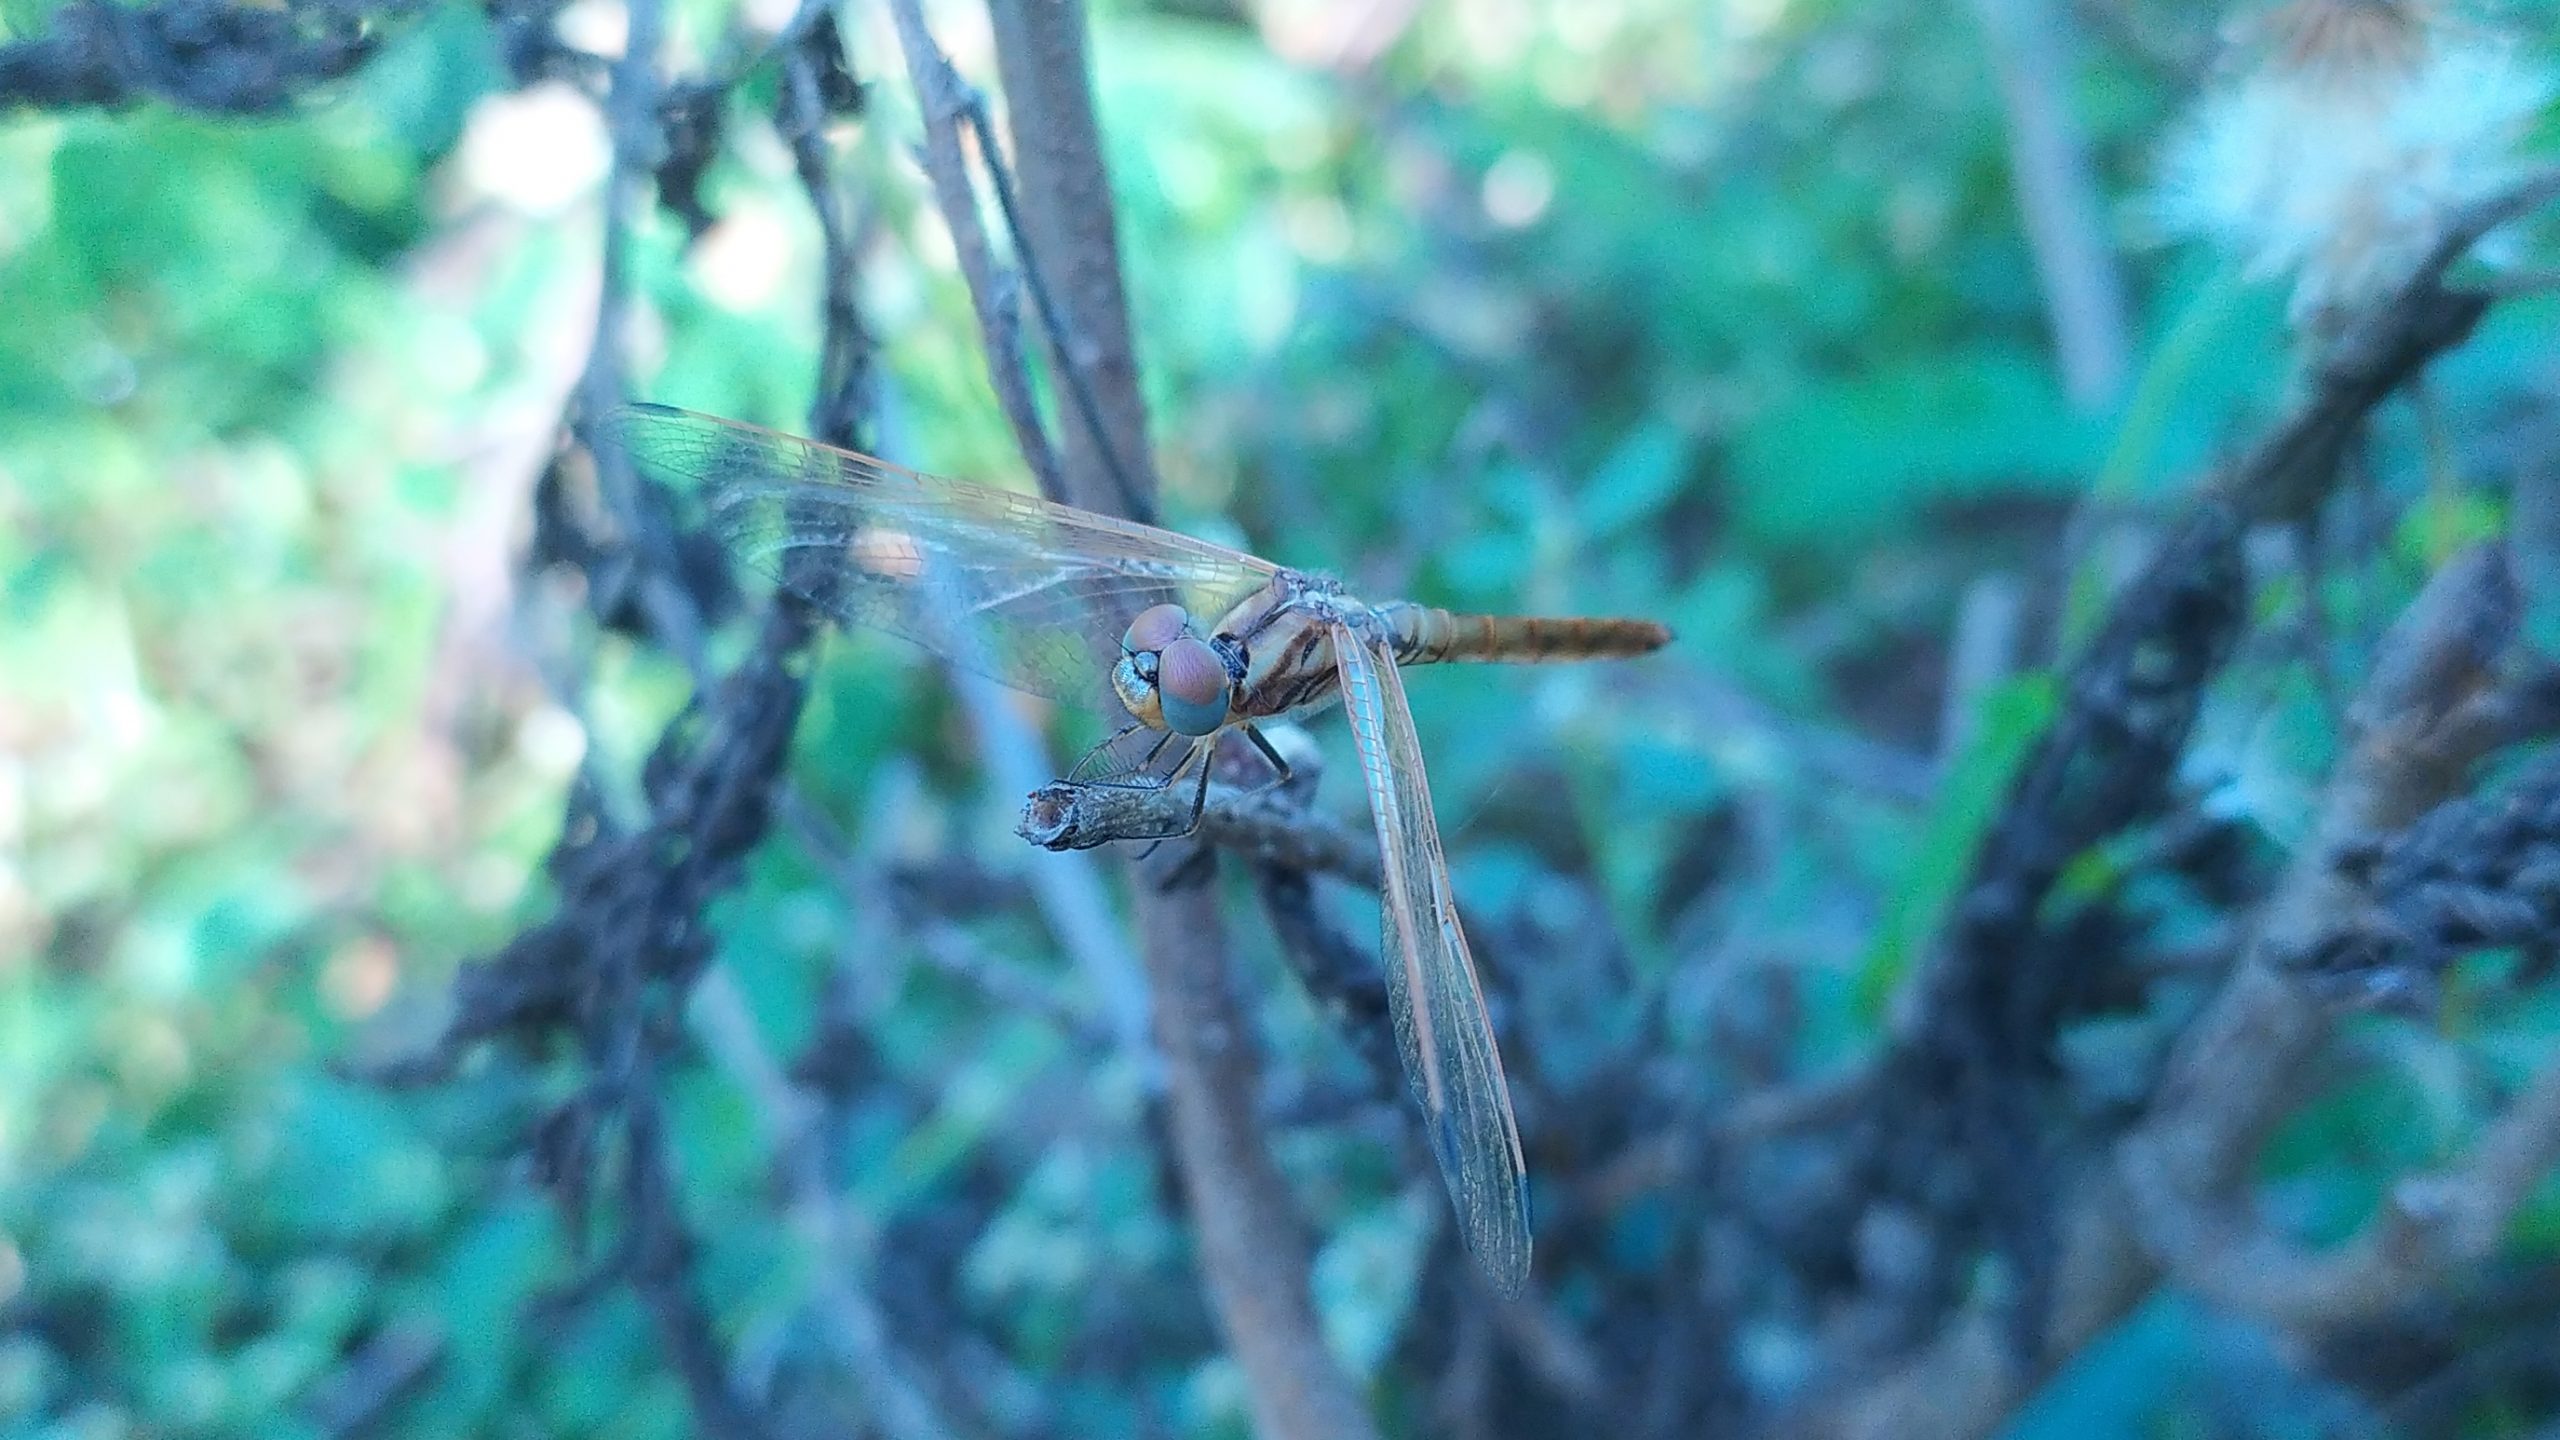 A dragonfly on plant leaf